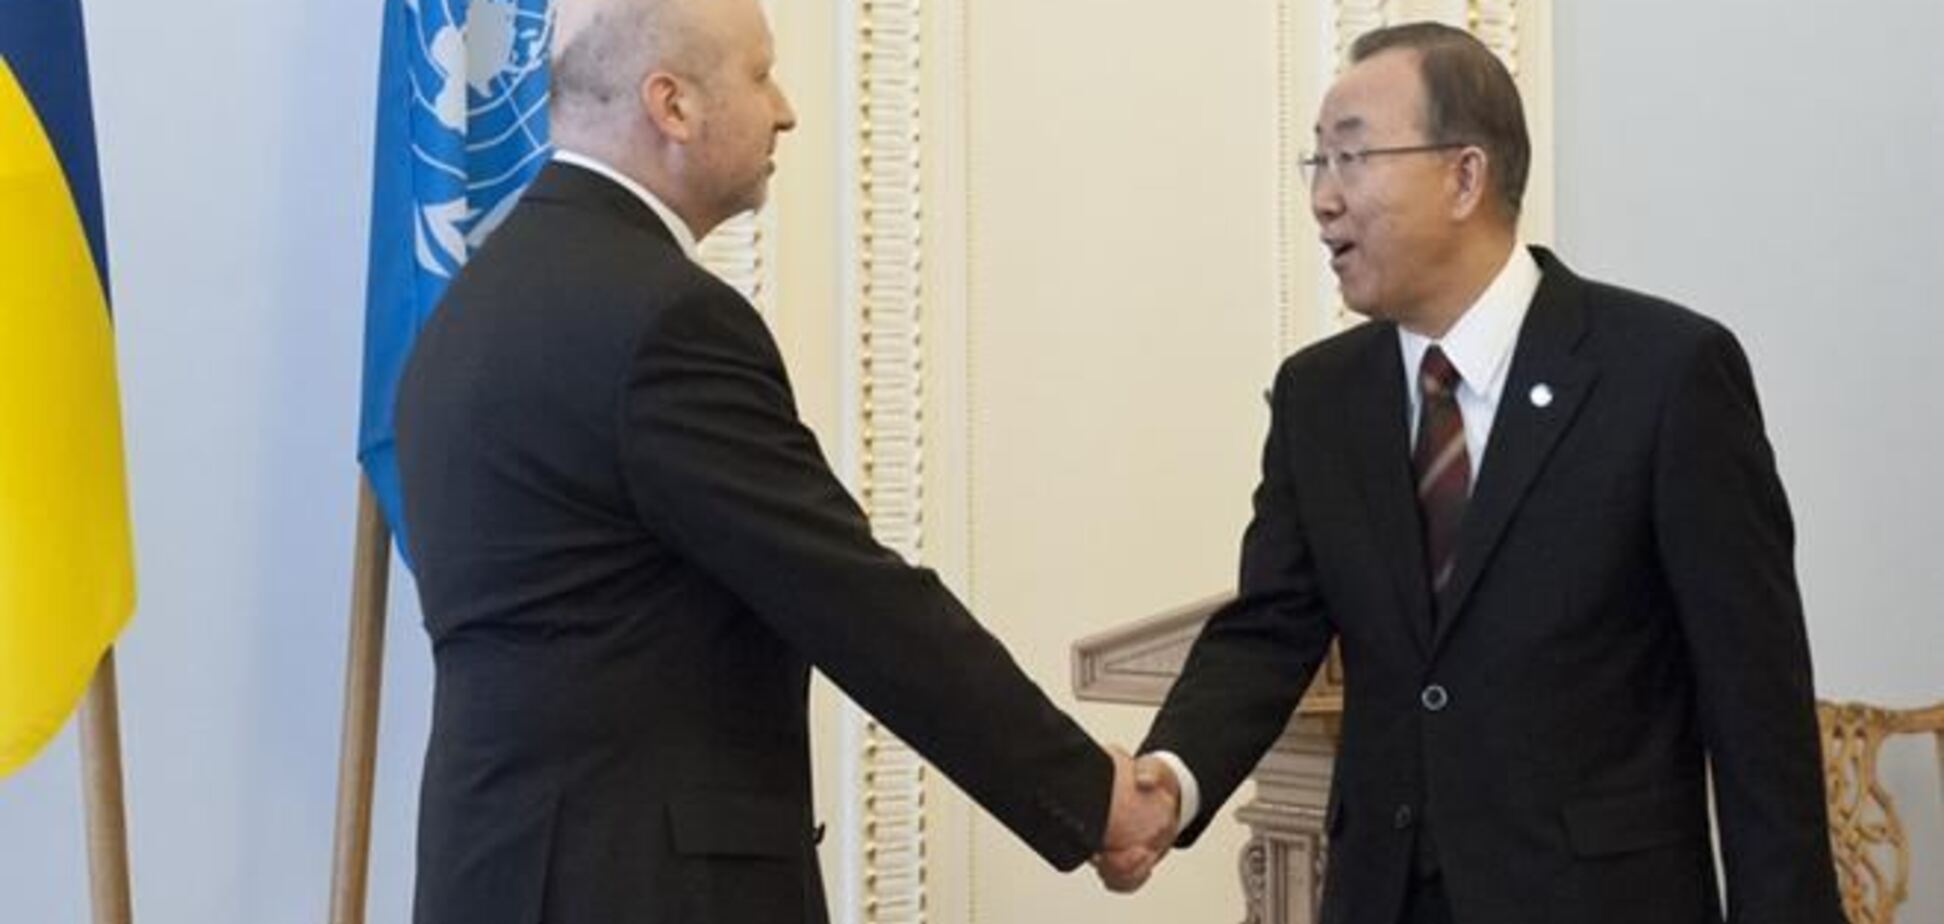 Пан Ги Мун отчитается перед Совбезом ООН об итогах визита в Киев